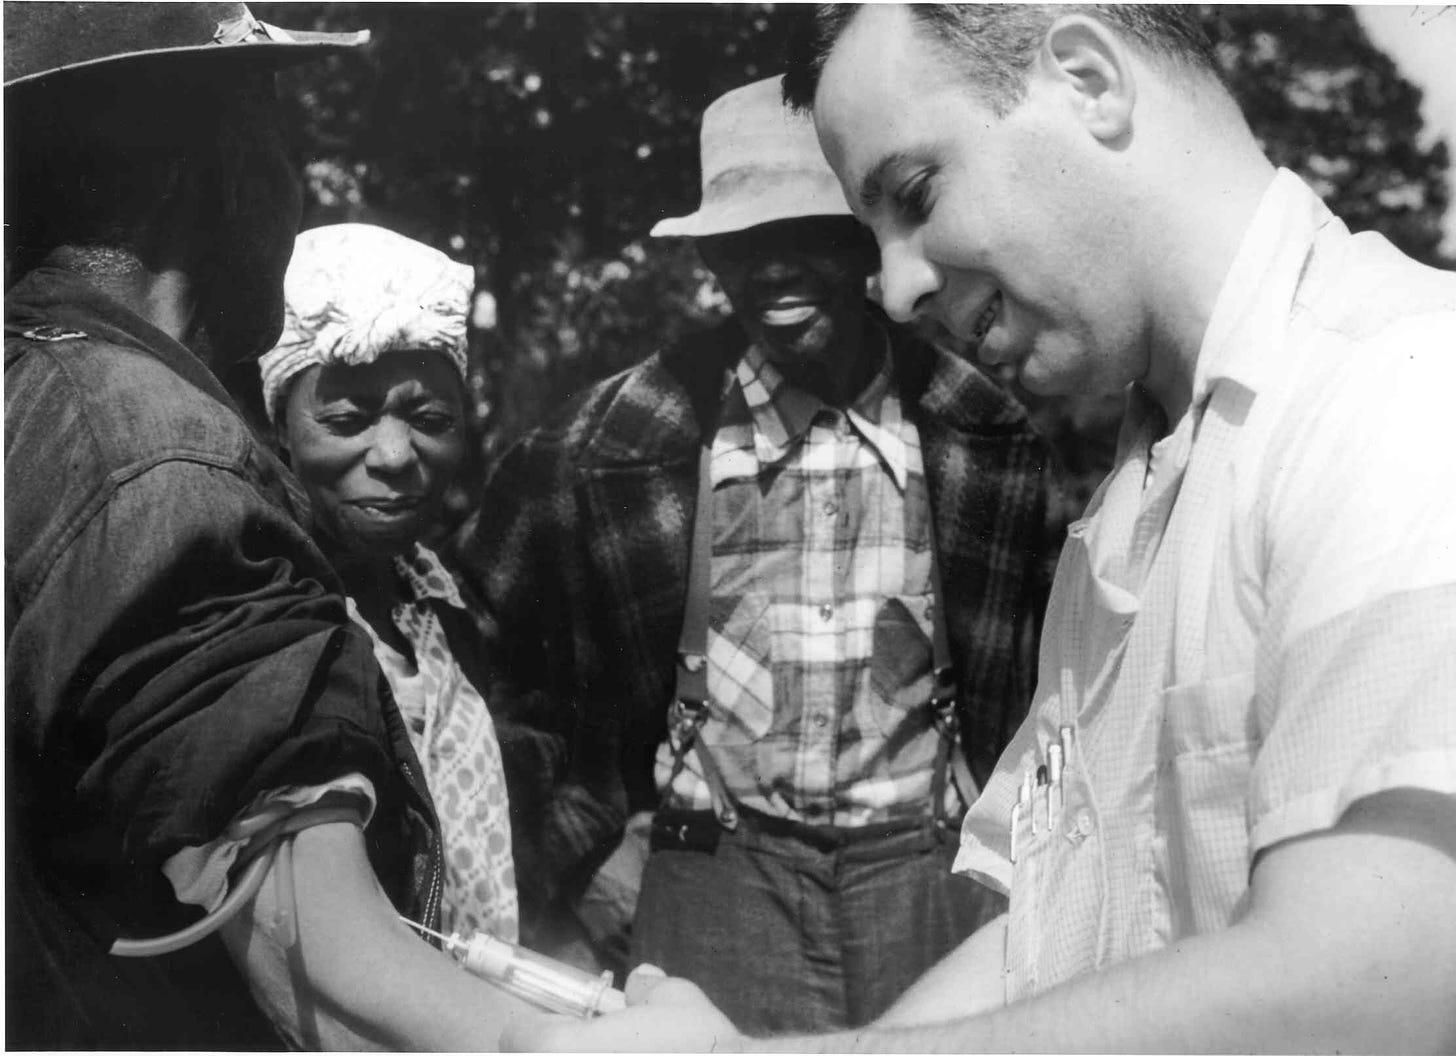 Tuskegee syphilis experiment - Wikipedia